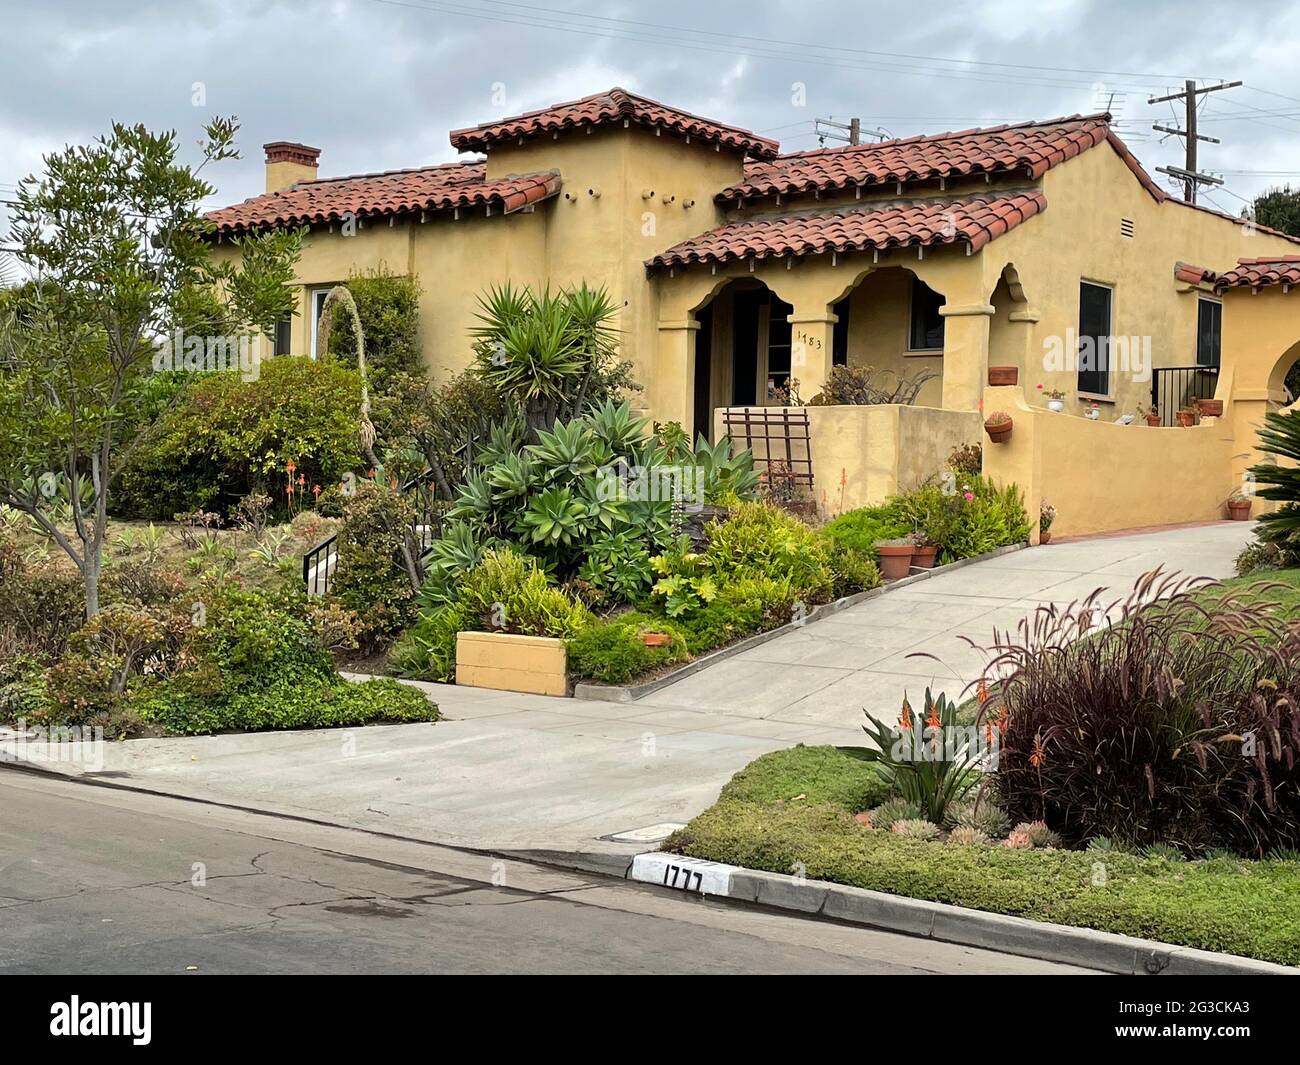 Typisches Haus im spanischen Stil mit Landschaftsgestaltung in Los Angeles, CA Stockfoto